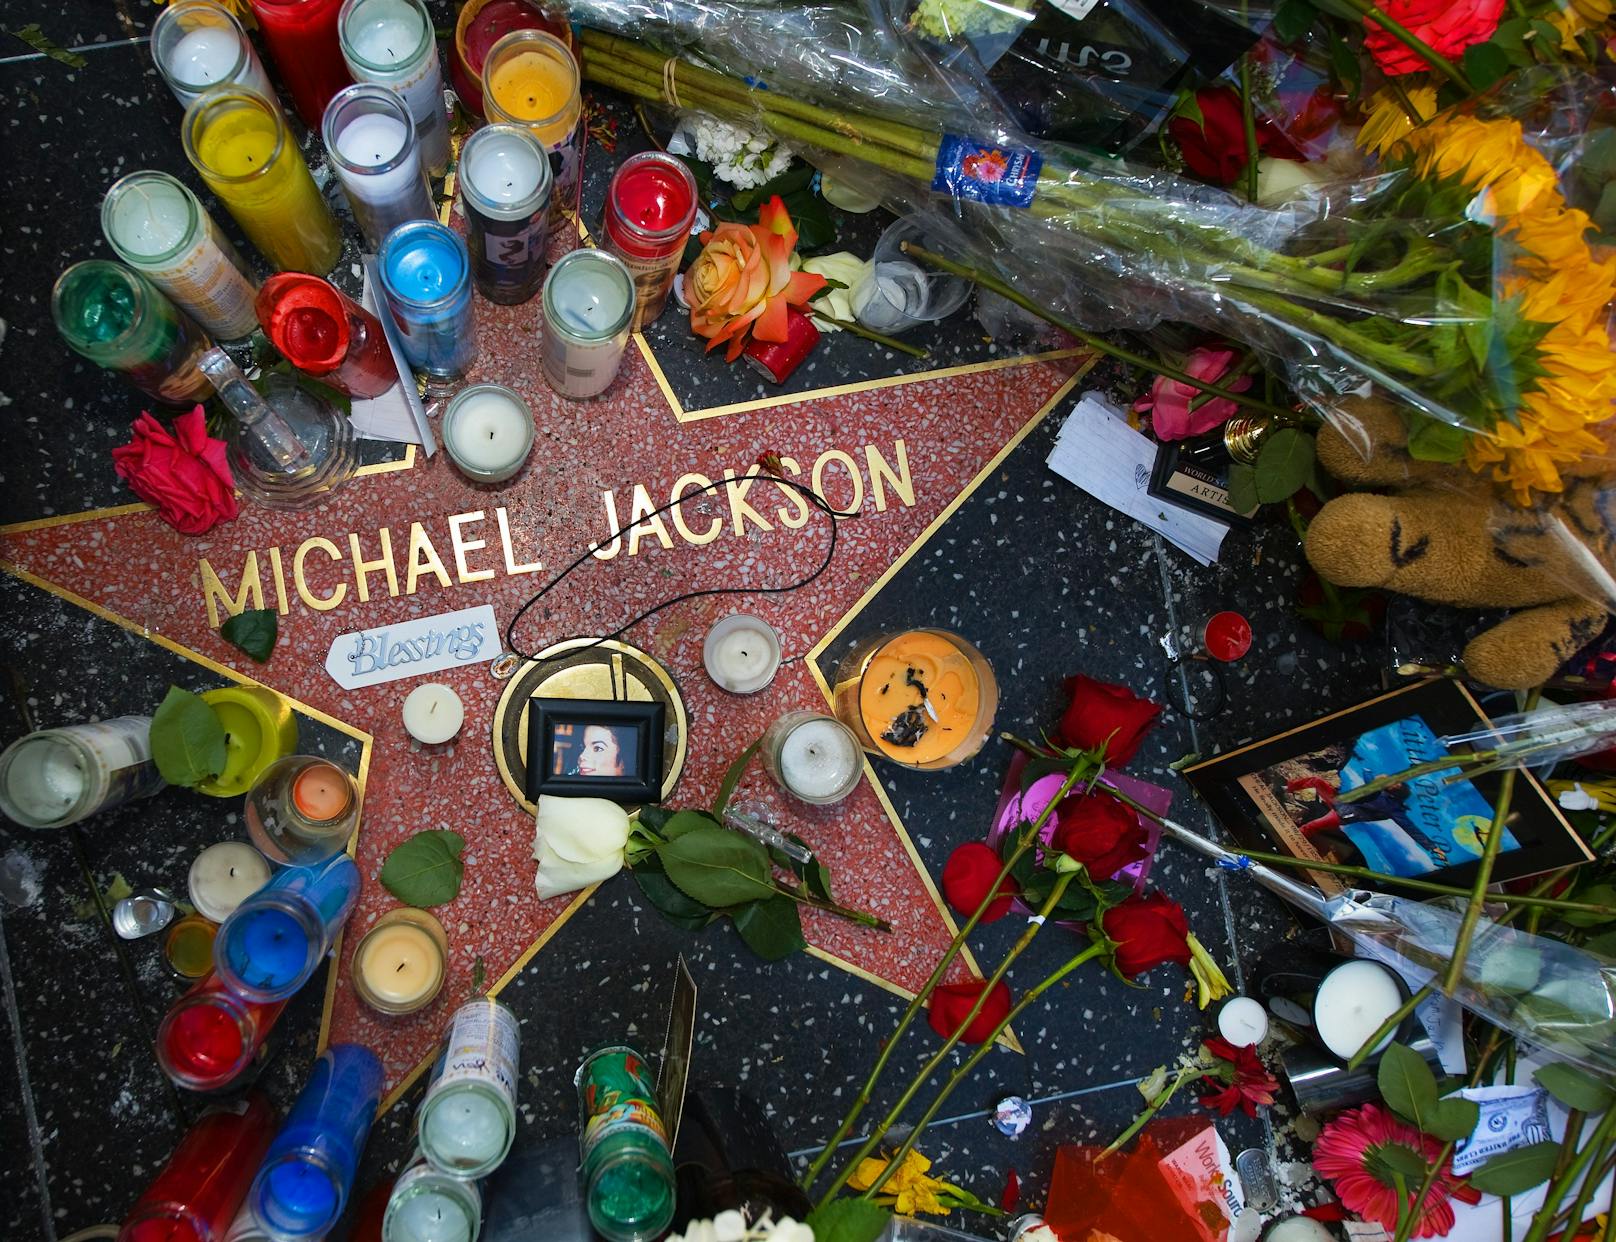 Jacksons plötzlicher Tod löste weltweit Trauerbekundungen aus und führte zu einer intensiven medialen Berichterstattung über sein Leben und Erbe.